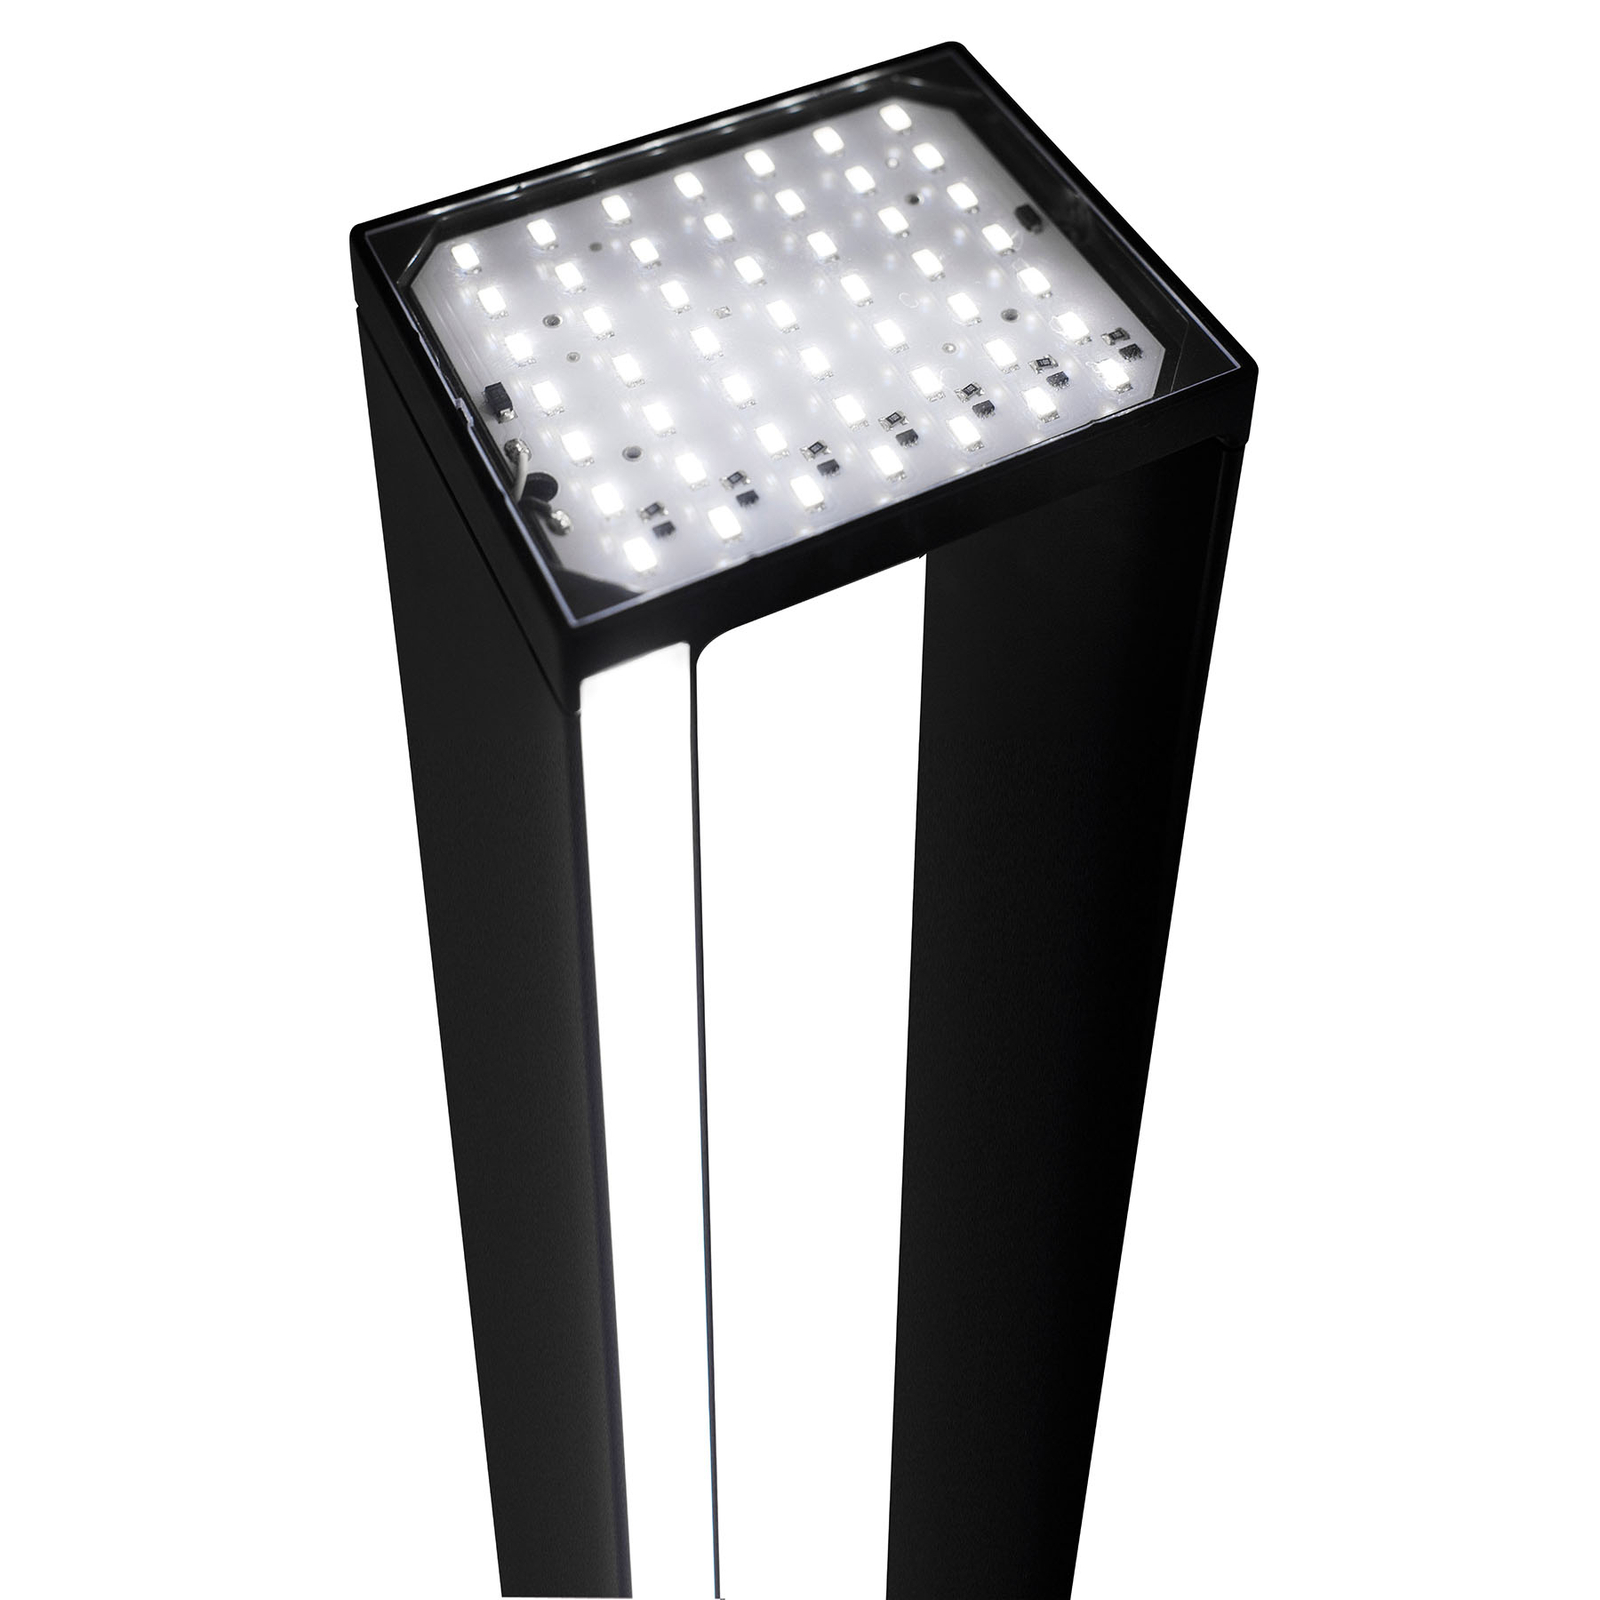 Lampa stojąca LED NEMO Tru 2 700 K, lakierowana na czarno